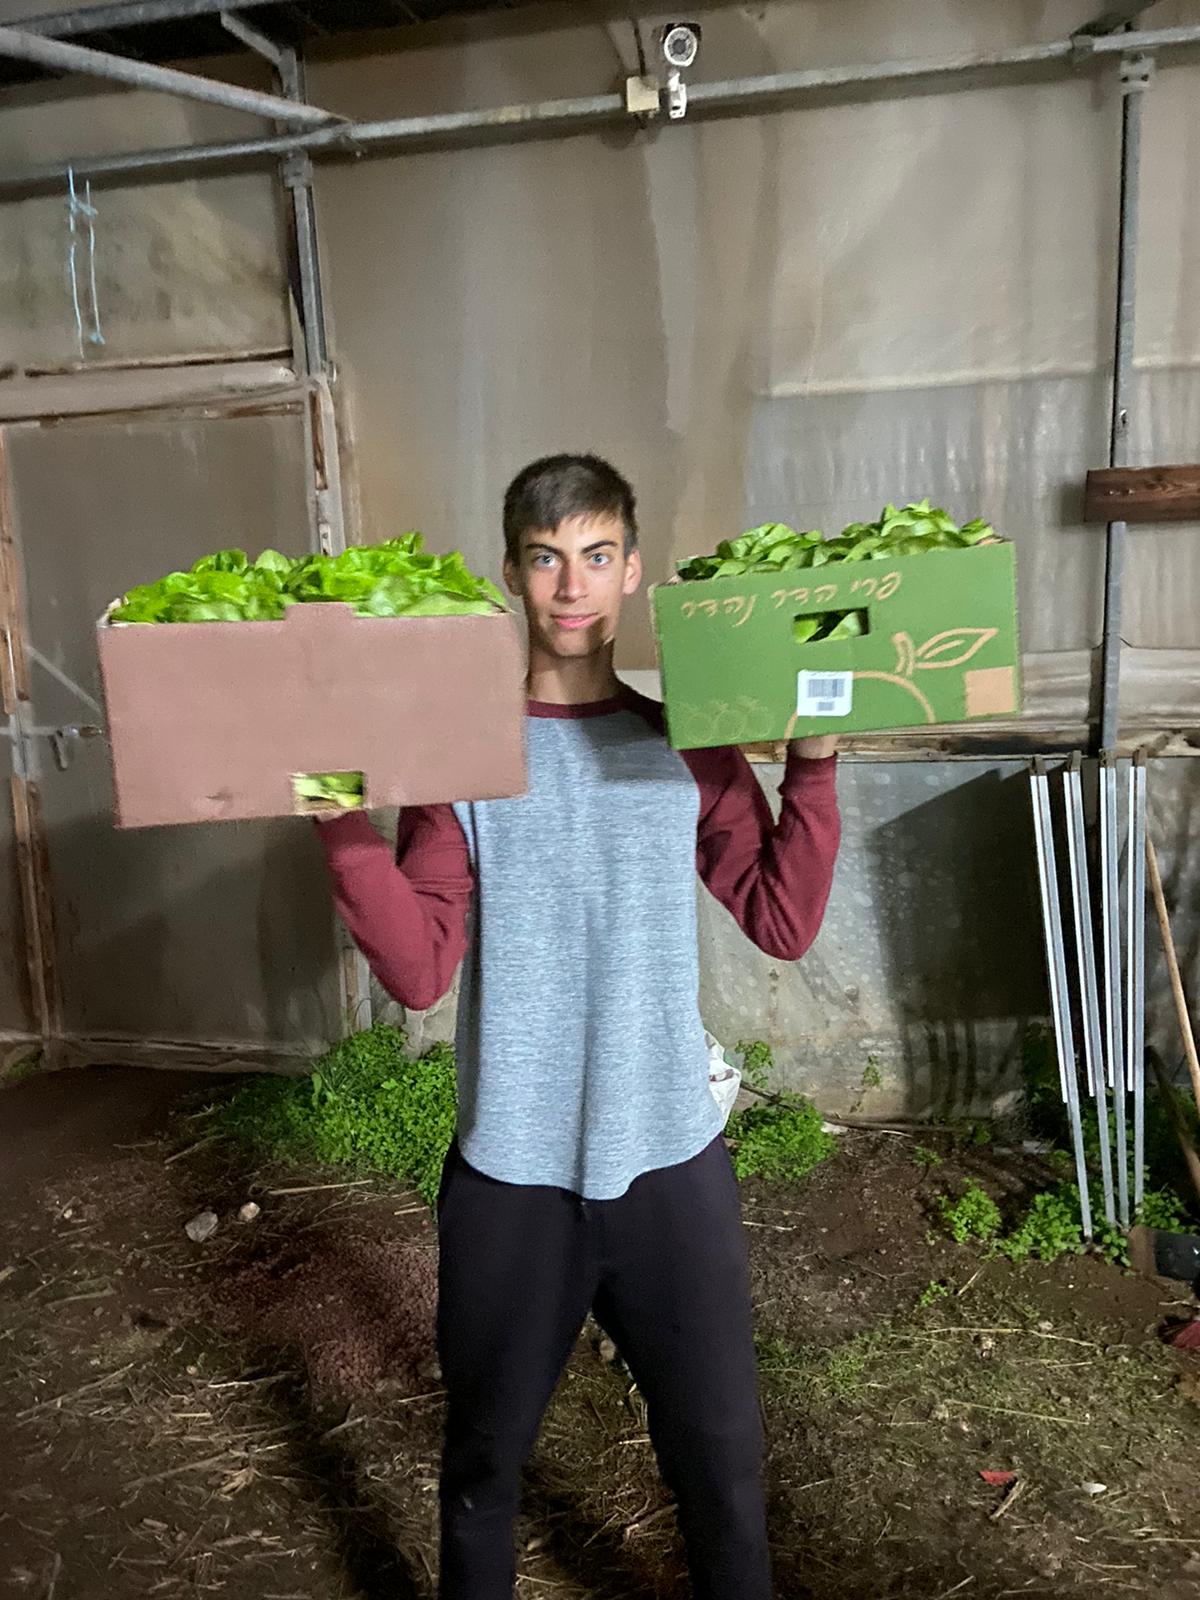 Los estudiantes de secundaria de una escuela agrícola decidieron iniciar un proyecto para apoyar a la asociación "Ezer Lazulat" en Afula, que dona verduras frescas y distribuye comidas calientes a personas necesitadas y sobrevivientes del Holocausto. Foto: Kamir.